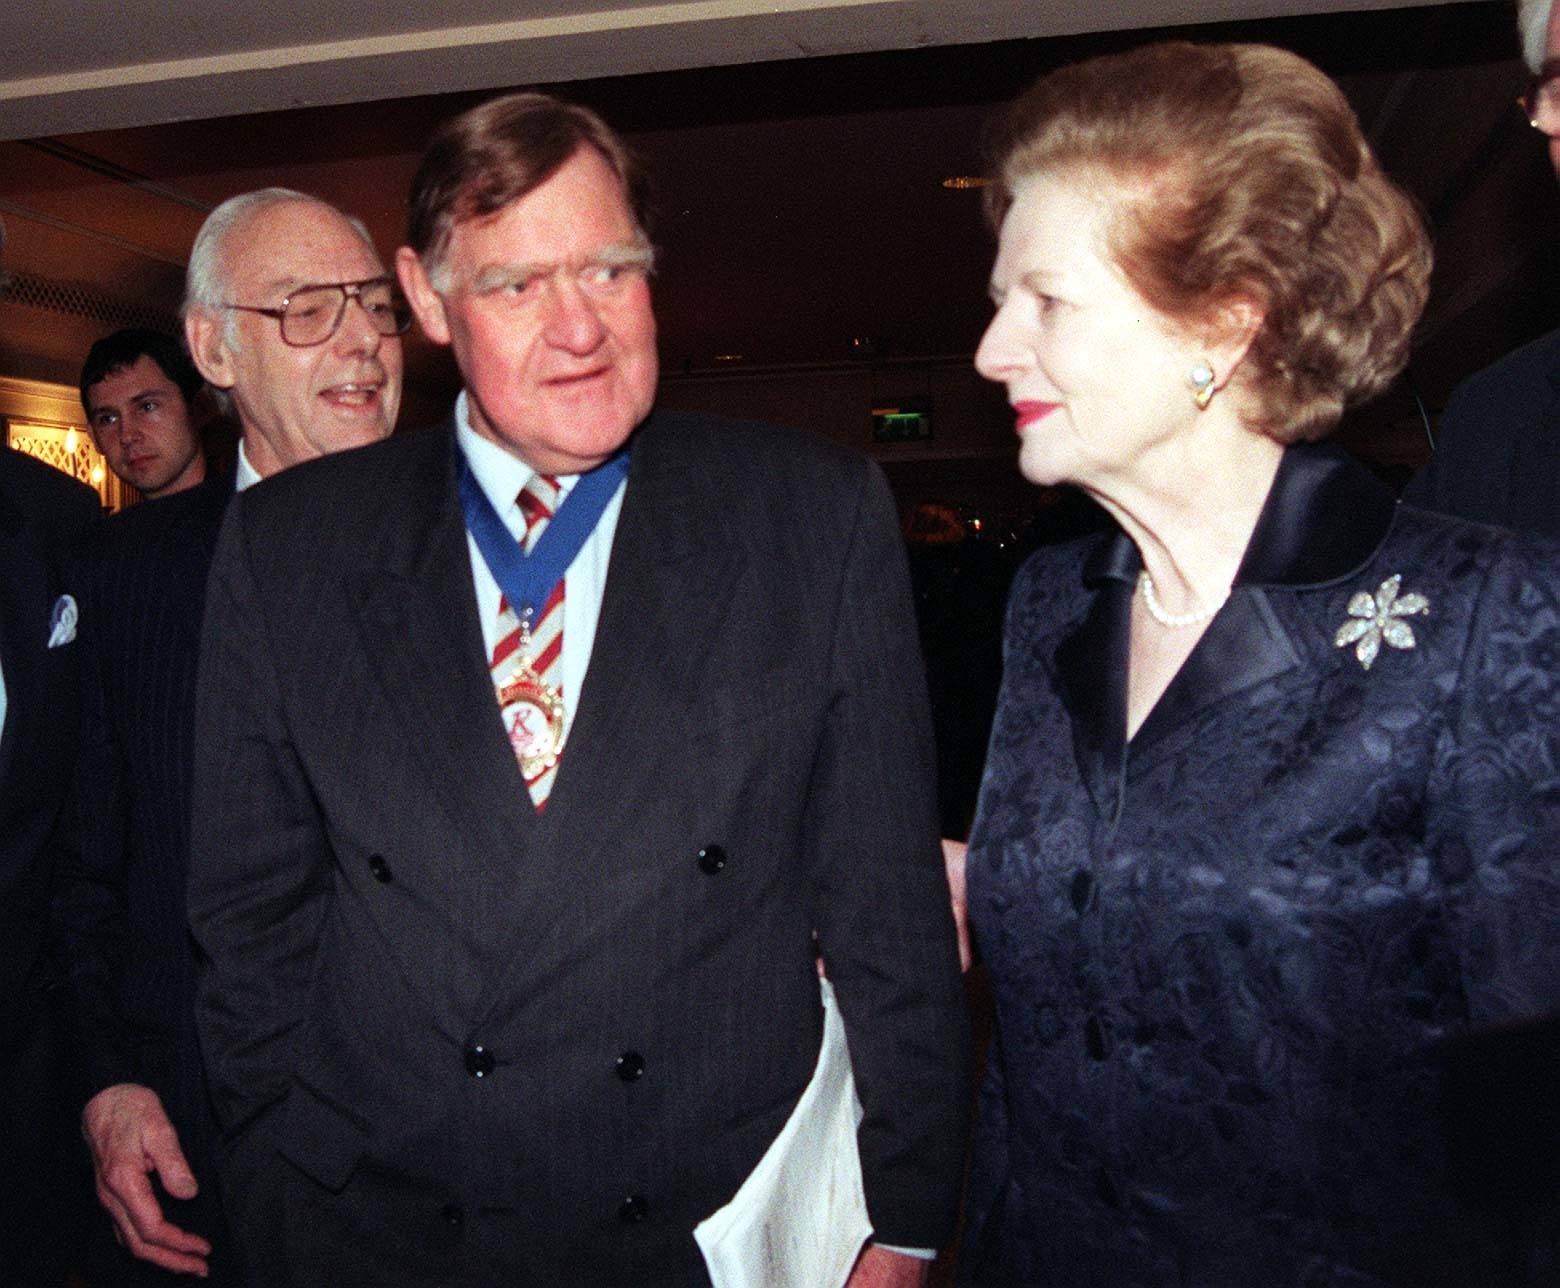 Sir Bernard Ingham and Baroness Thatcher.